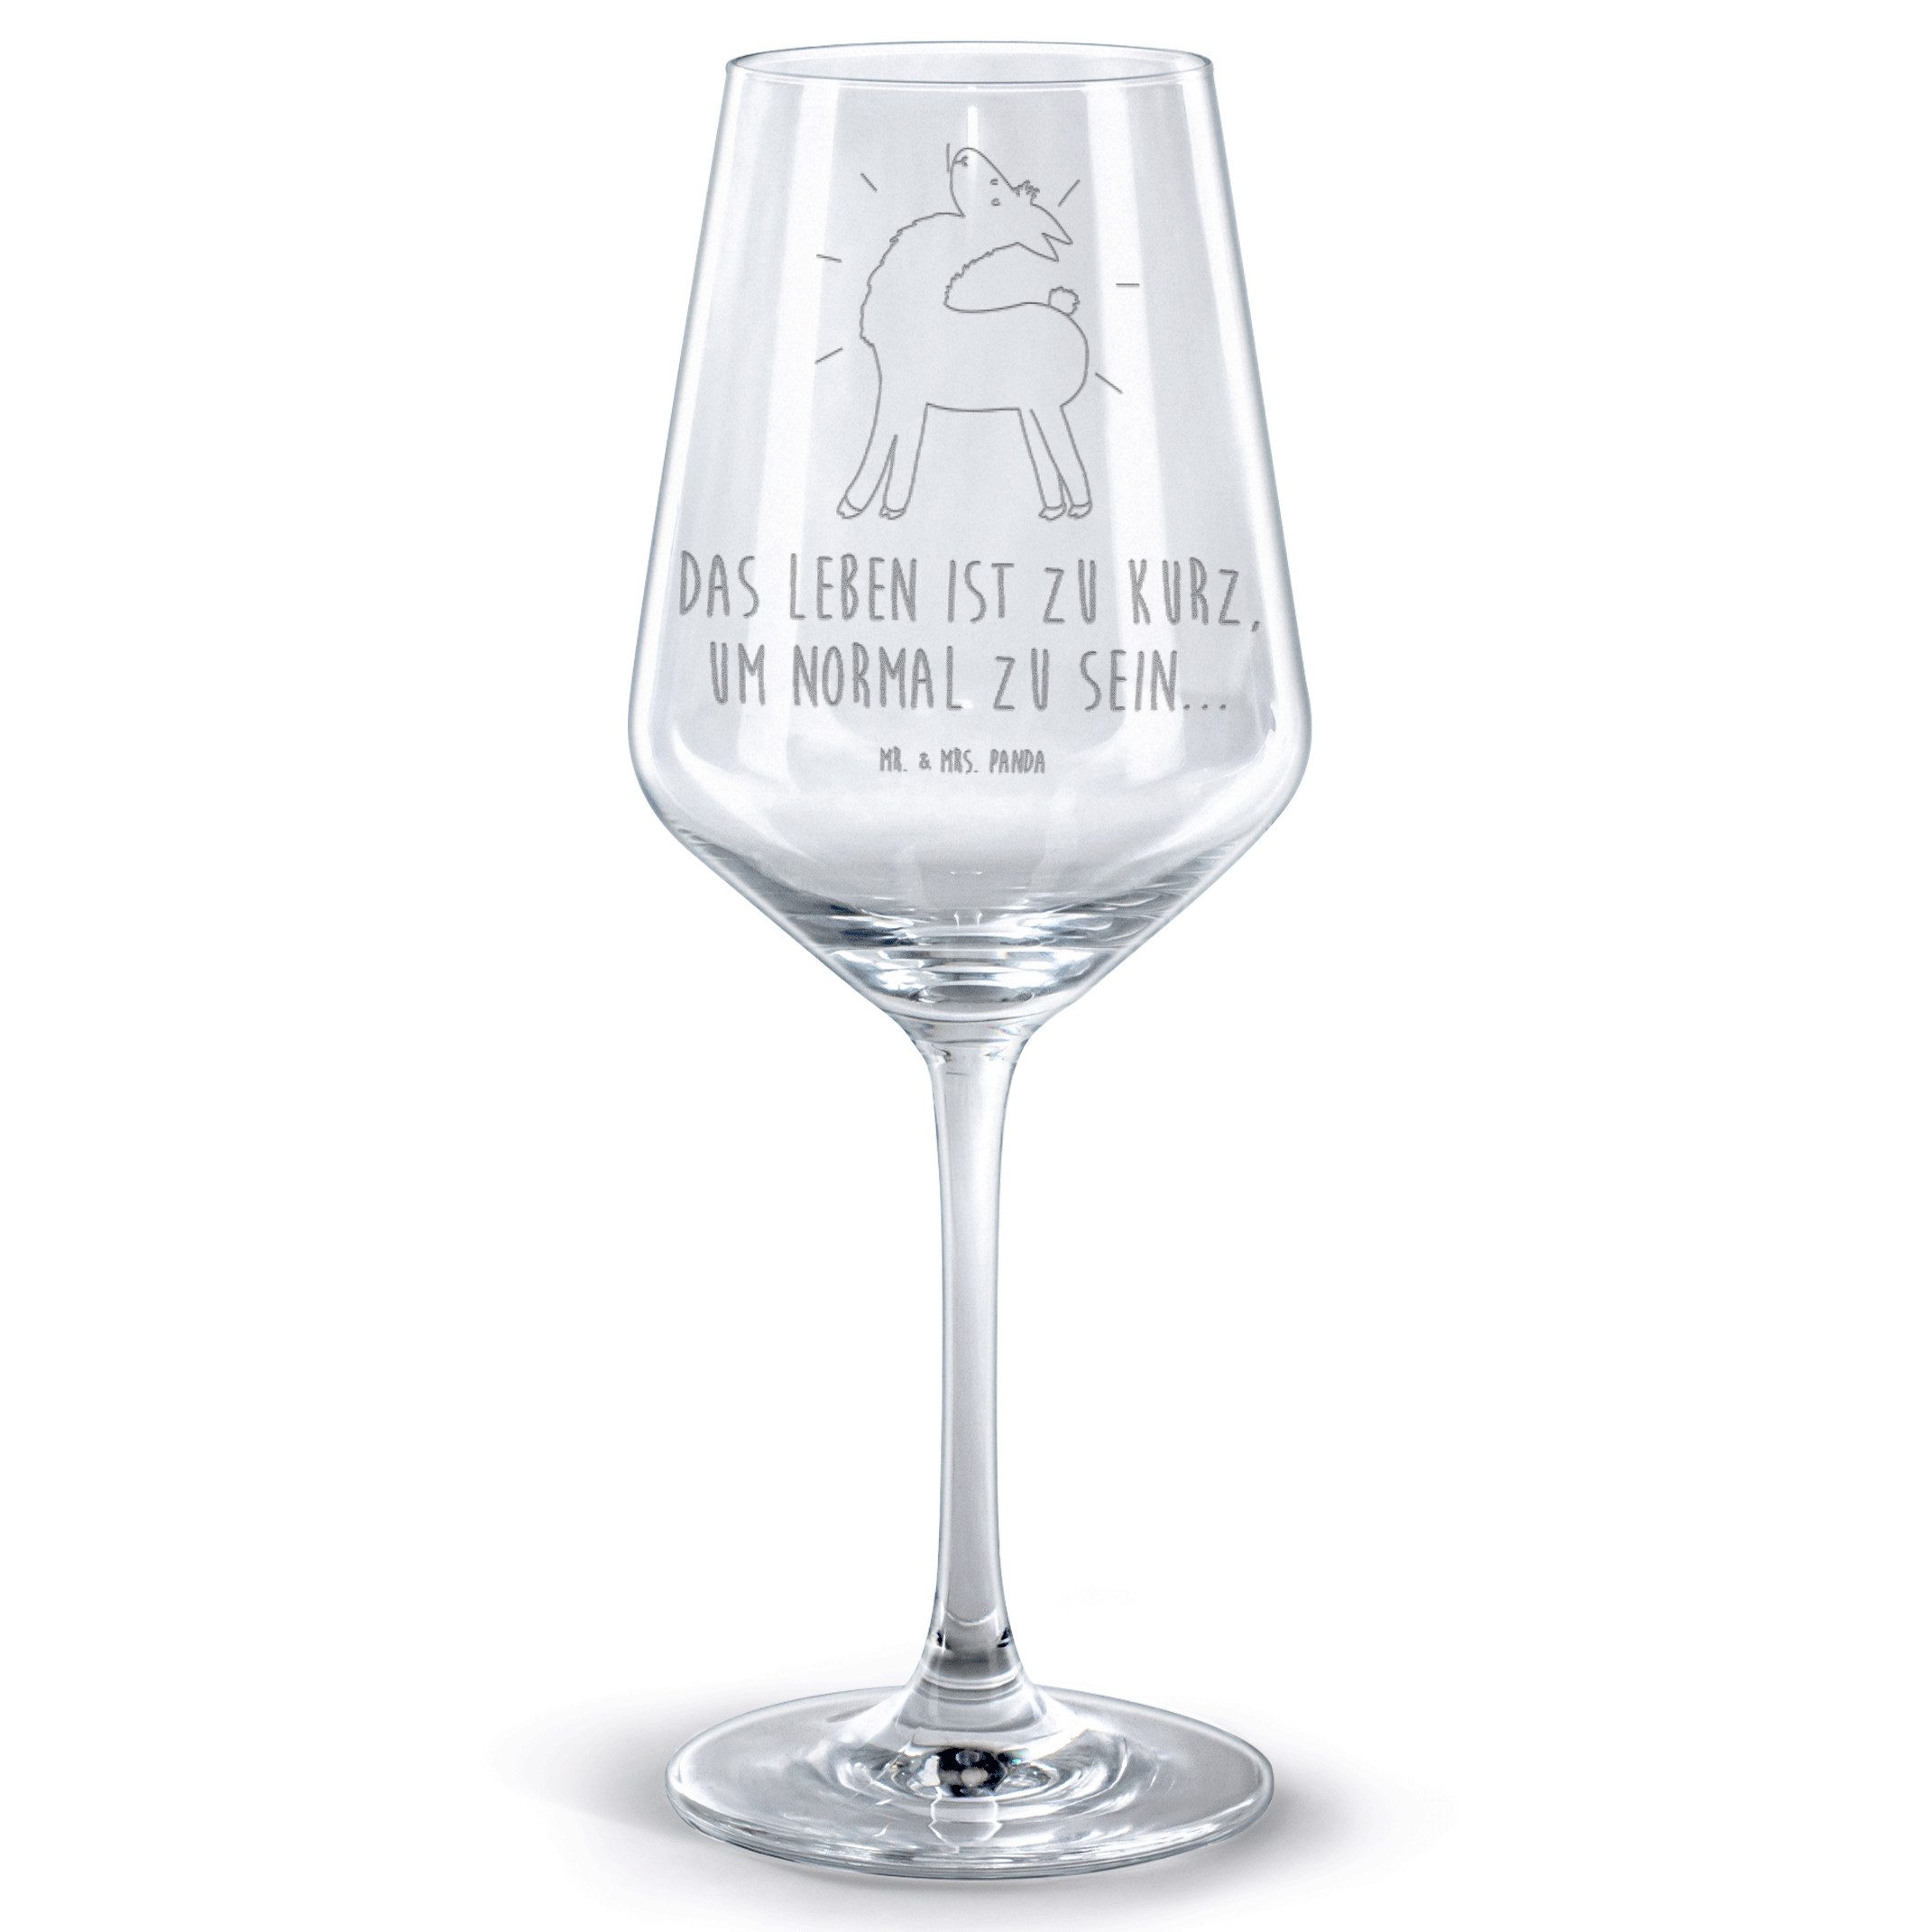 Mr. & Mrs. Panda Rotweinglas Lama Stolz - Transparent - Geschenk, Rotwein Glas, Weinglas mit Gravu, Premium Glas, Stilvolle Gravur